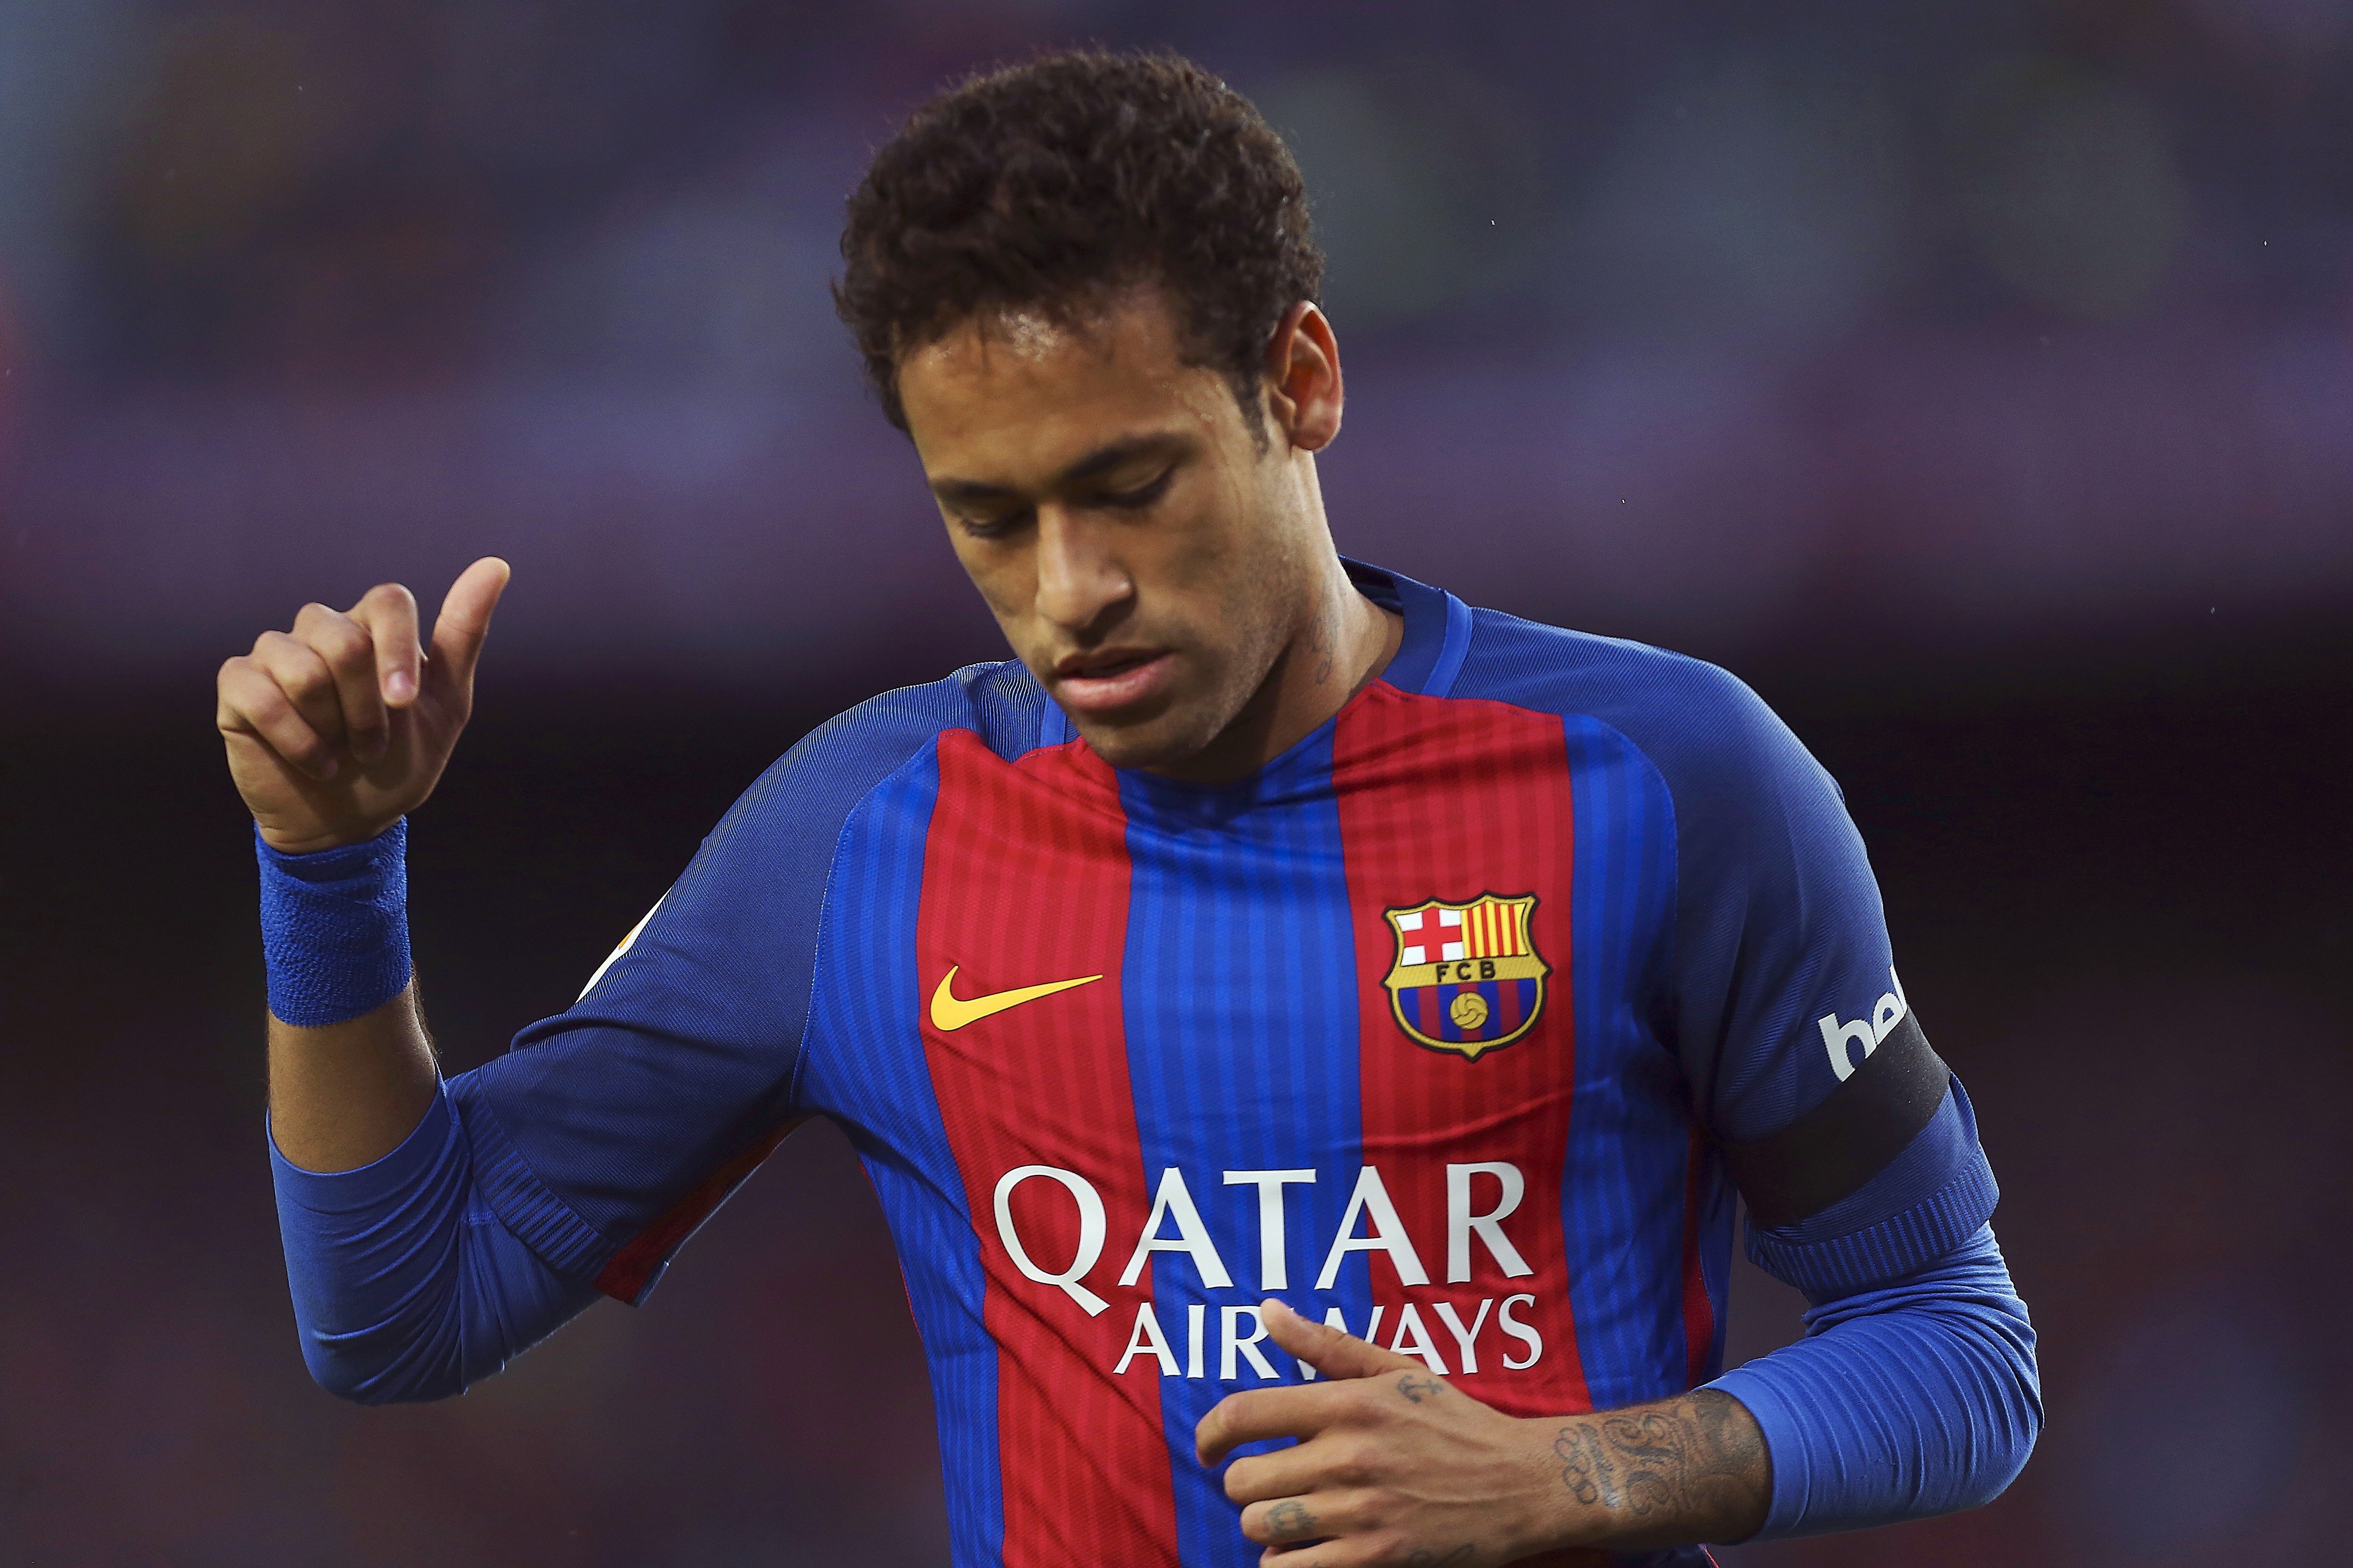 El Barça guanya la batalla judicial contra el Santos pel traspàs de Neymar